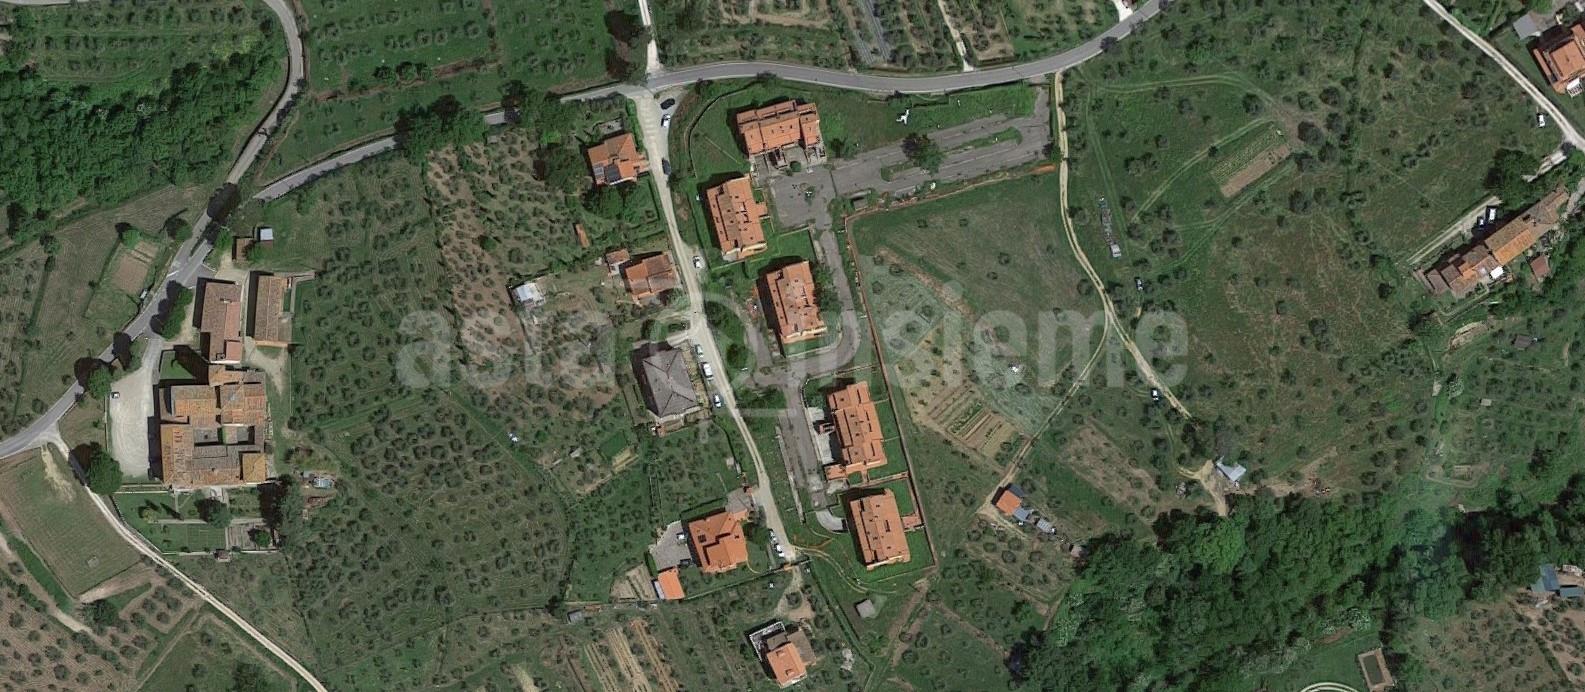 Complesso Residenziale Via Gino Sottili snc REGGELLO Pietrapiana di 3,241.73 Mq. costituito da 23 appartamenti con autorimesse e cantine